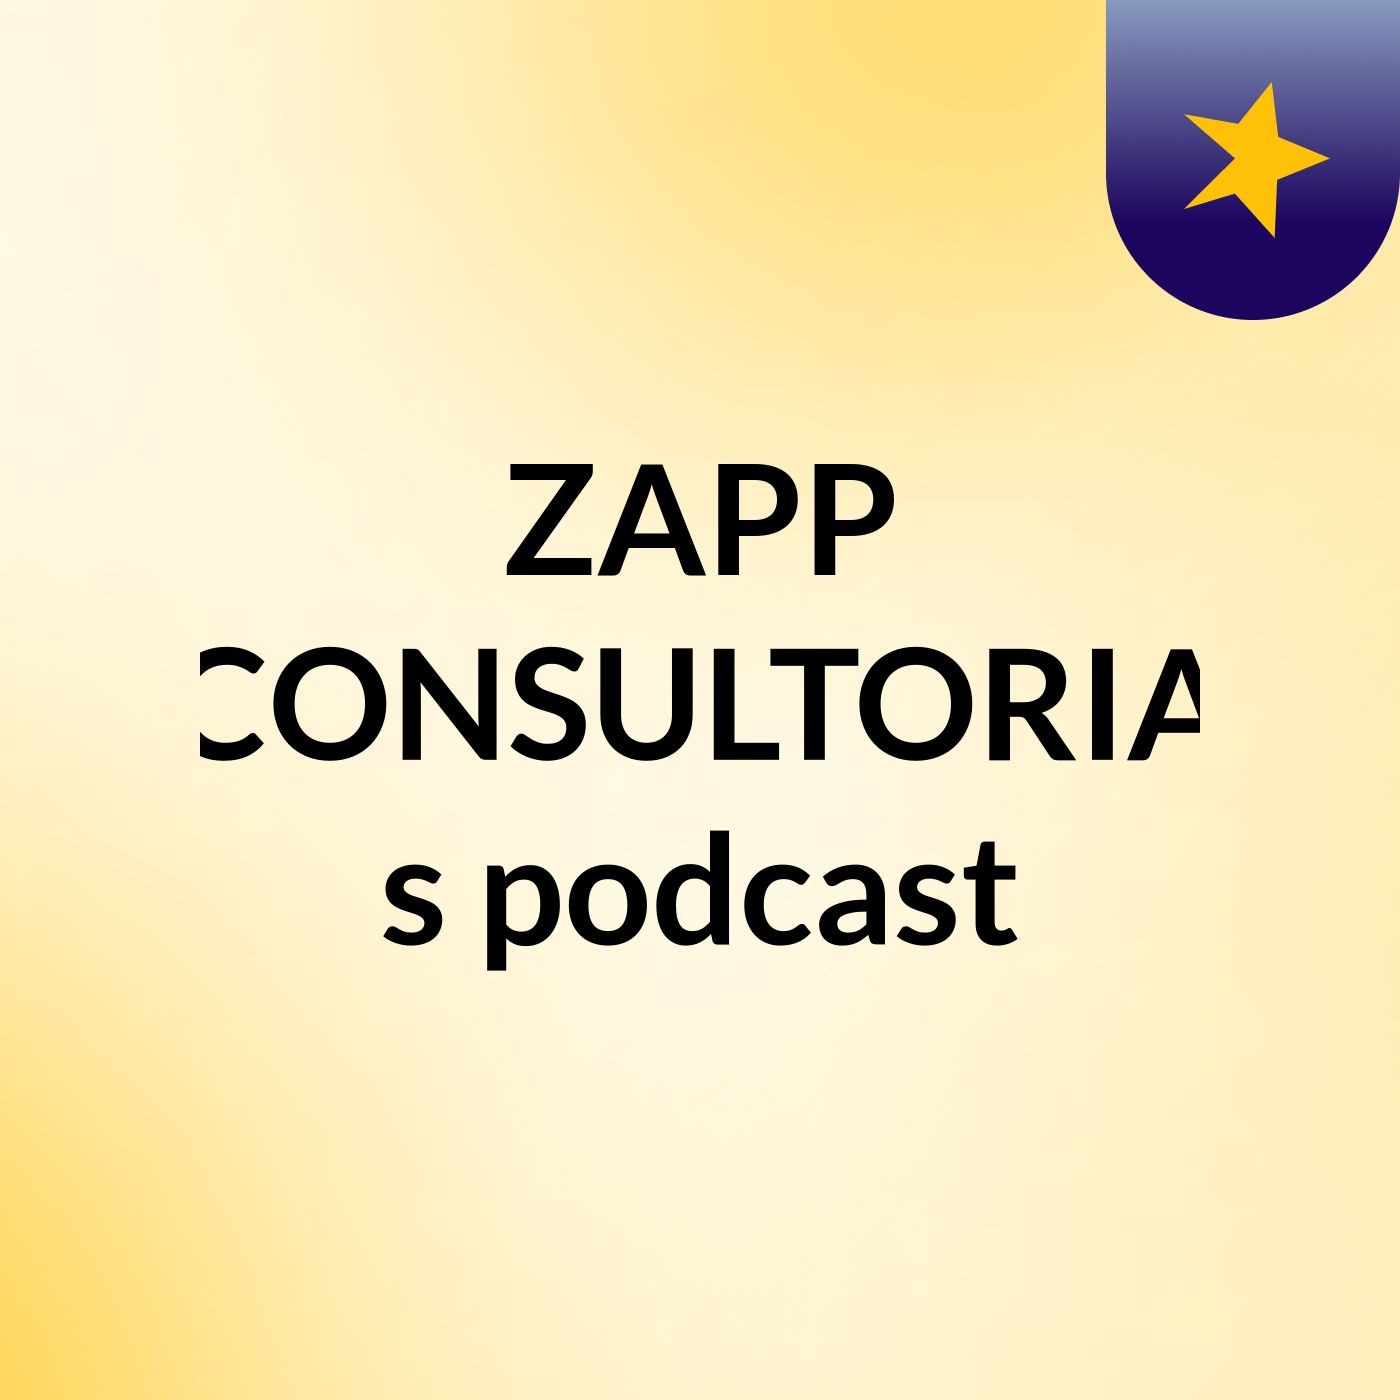 ZAPP CONSULTORIA's podcast